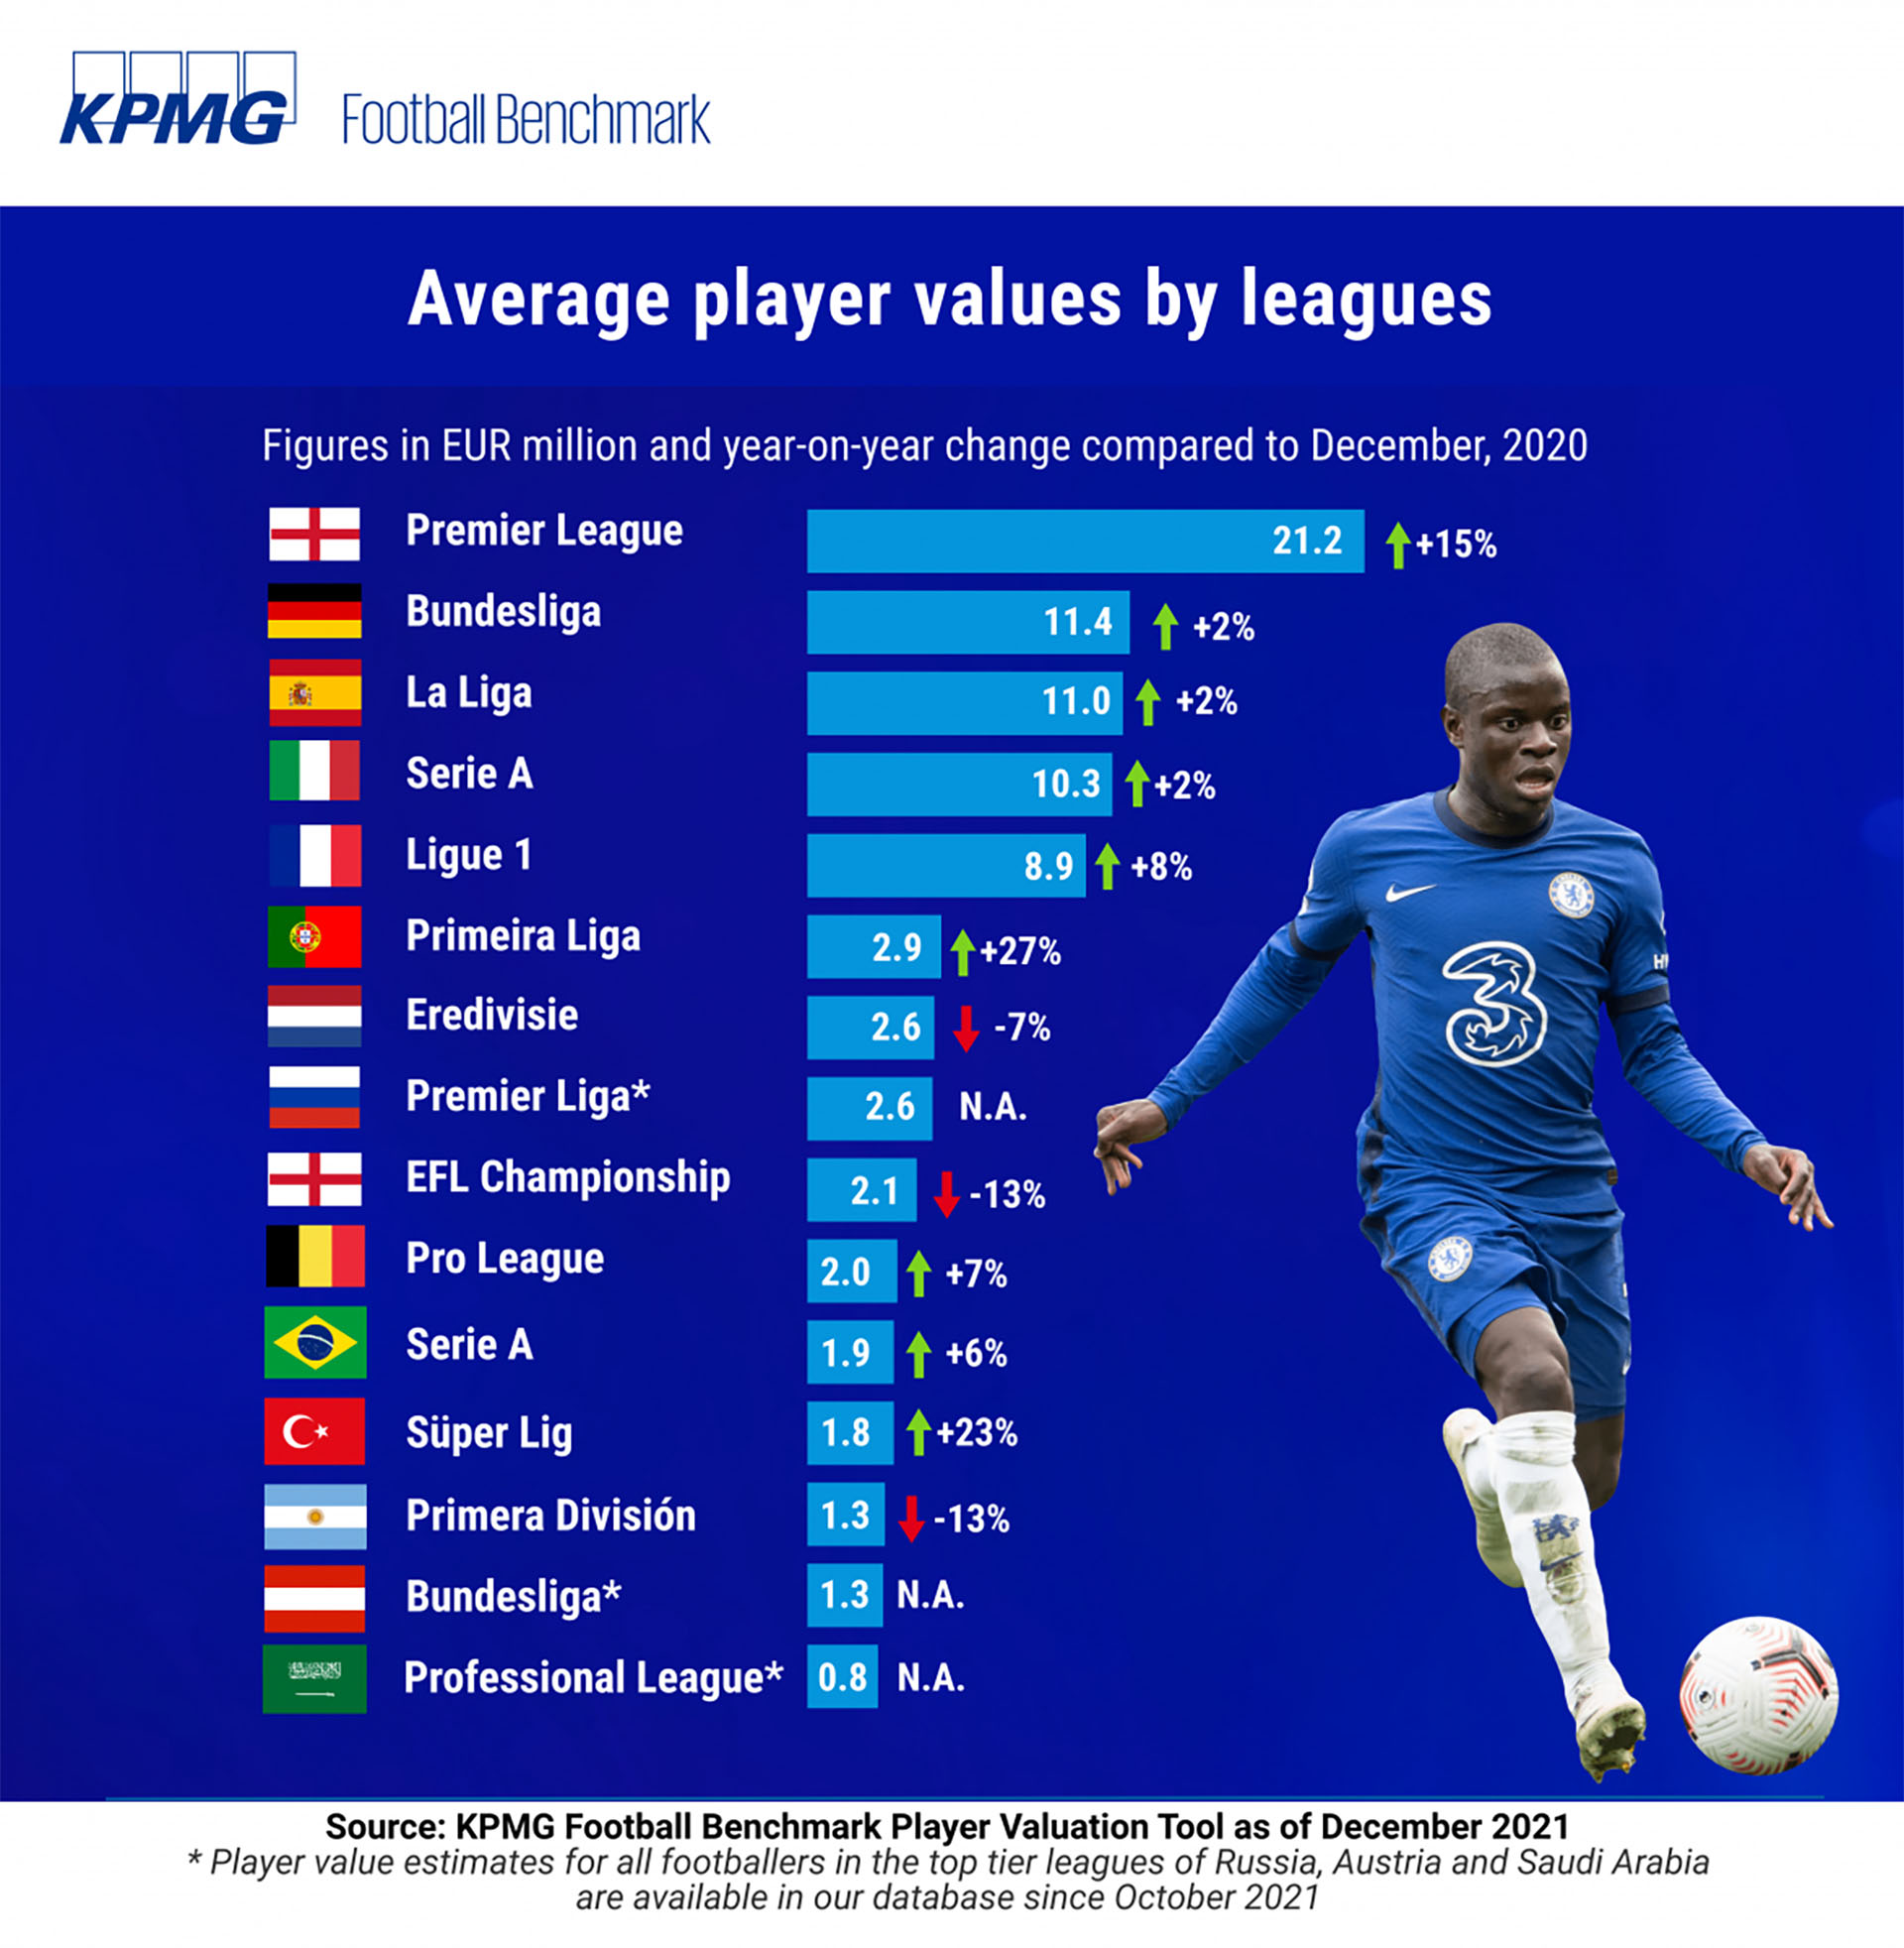 Las ligas más valiosas (los valores están en millones de euros)